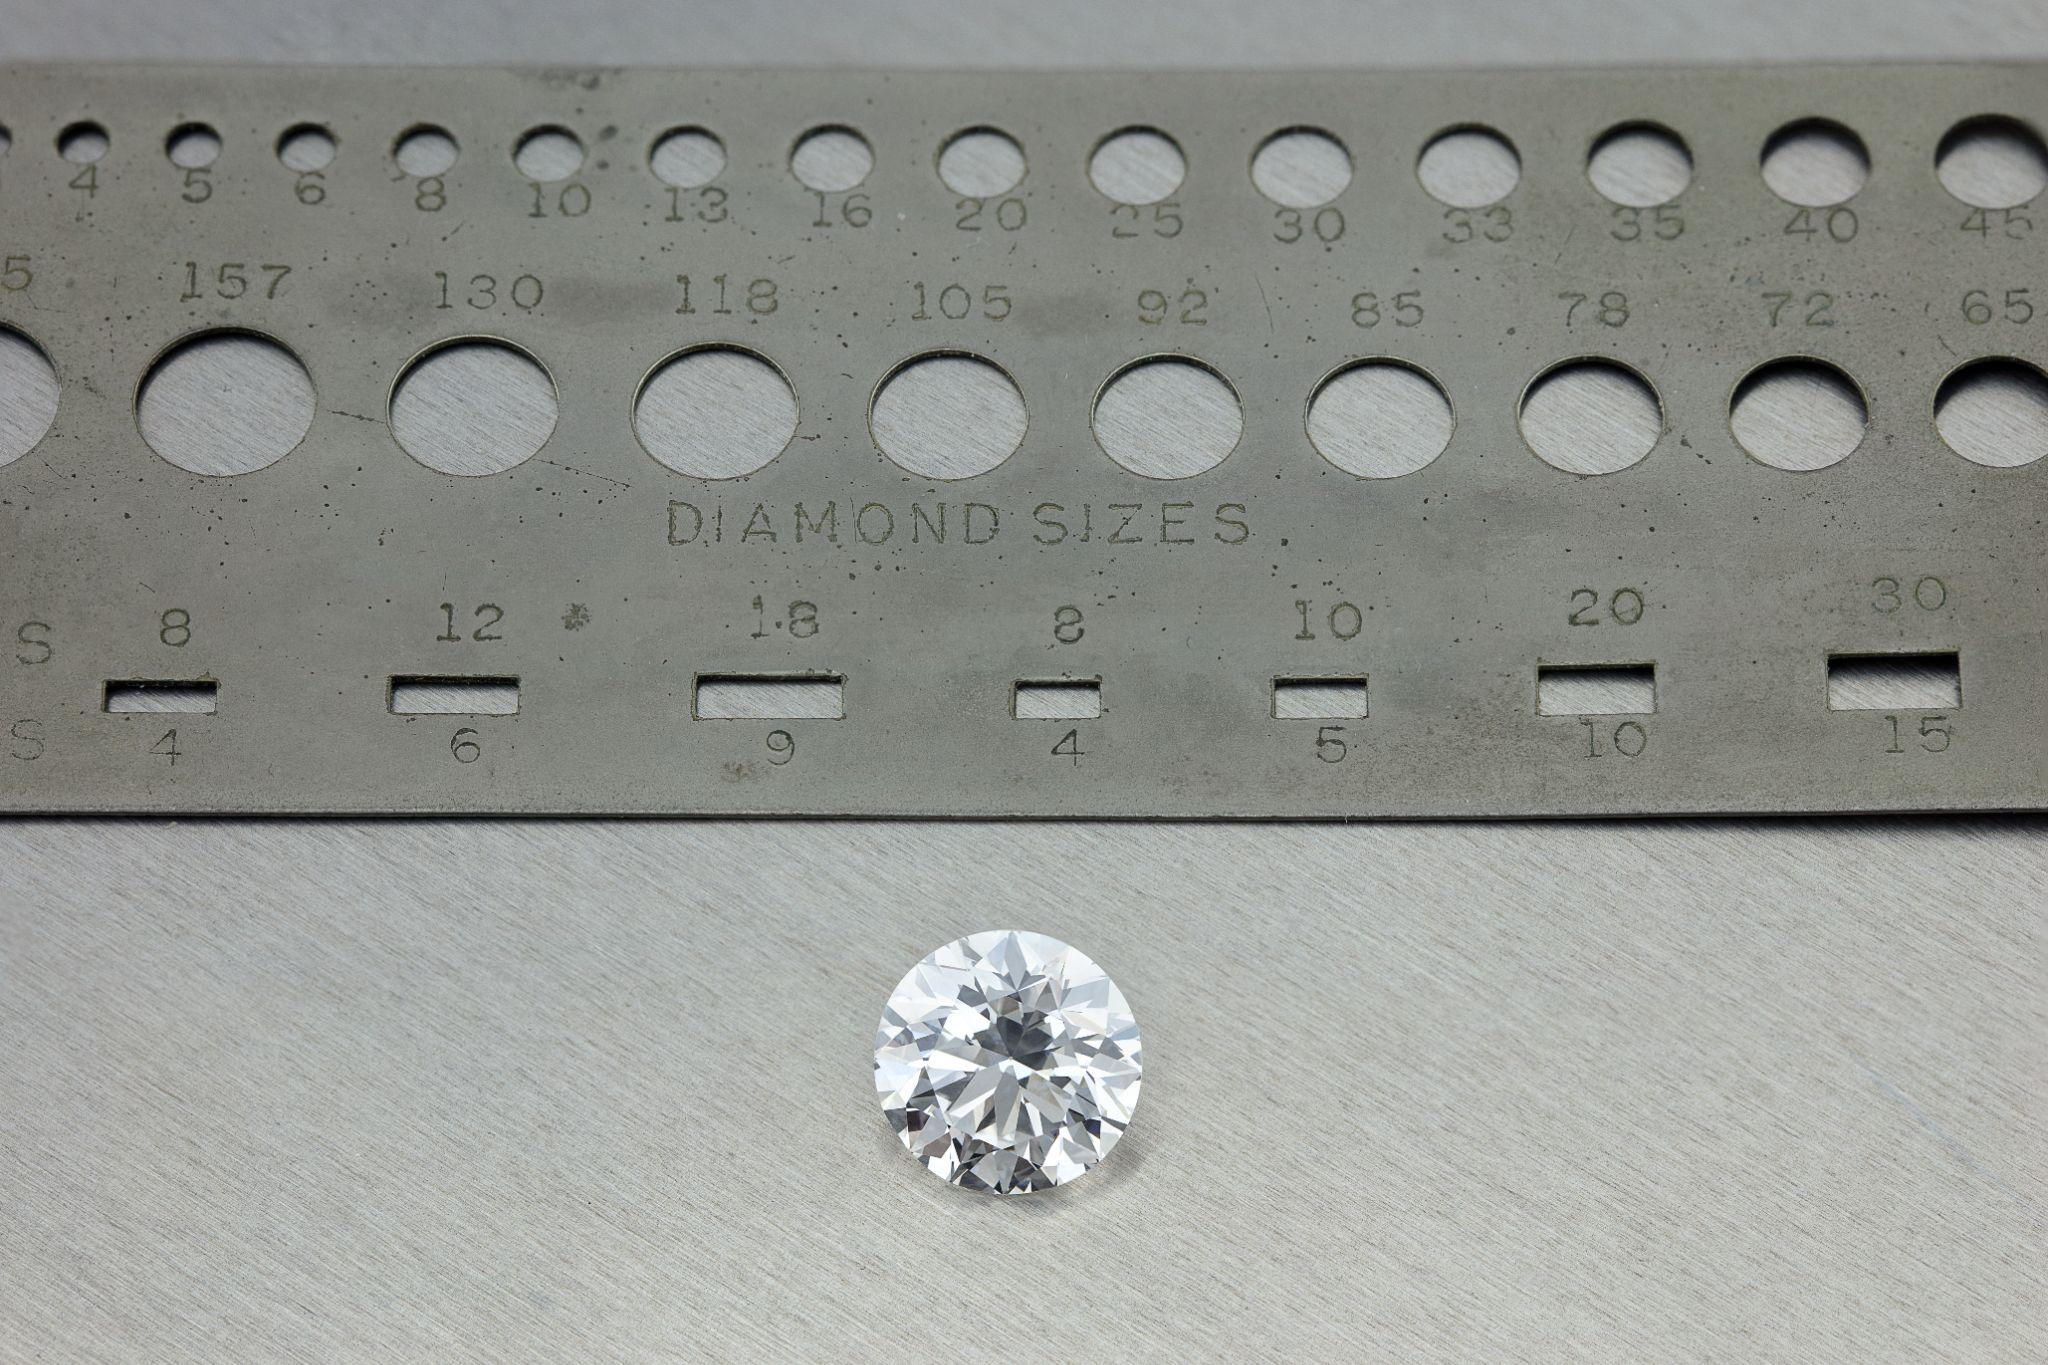 Diamond size ruler.